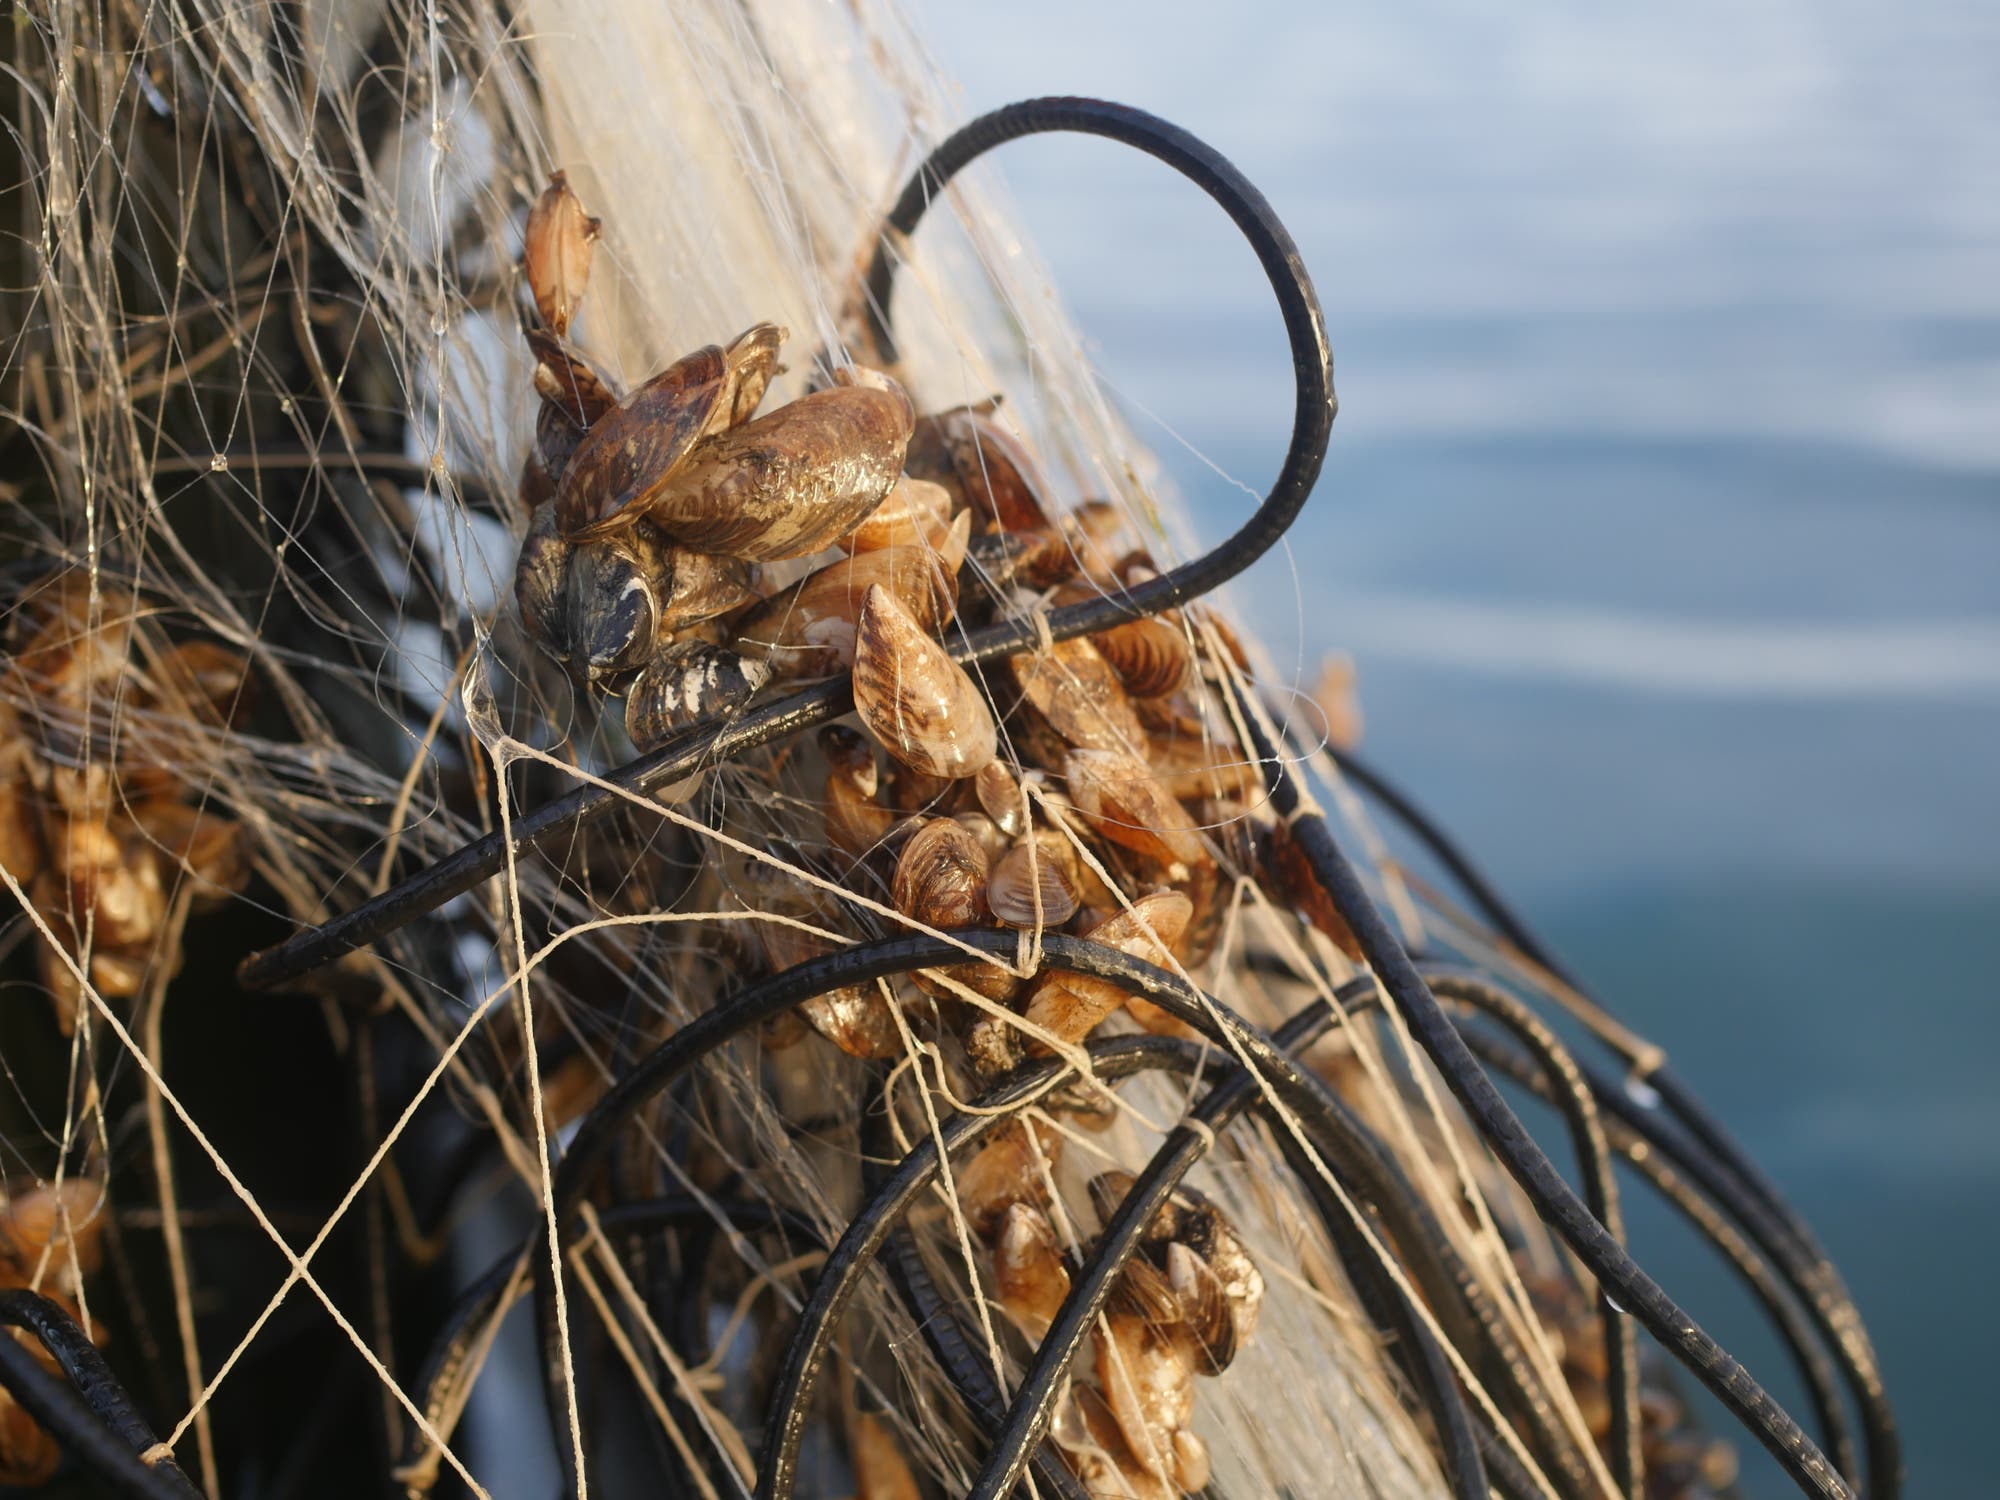 Quaggamuscheln in einem Fischernetz